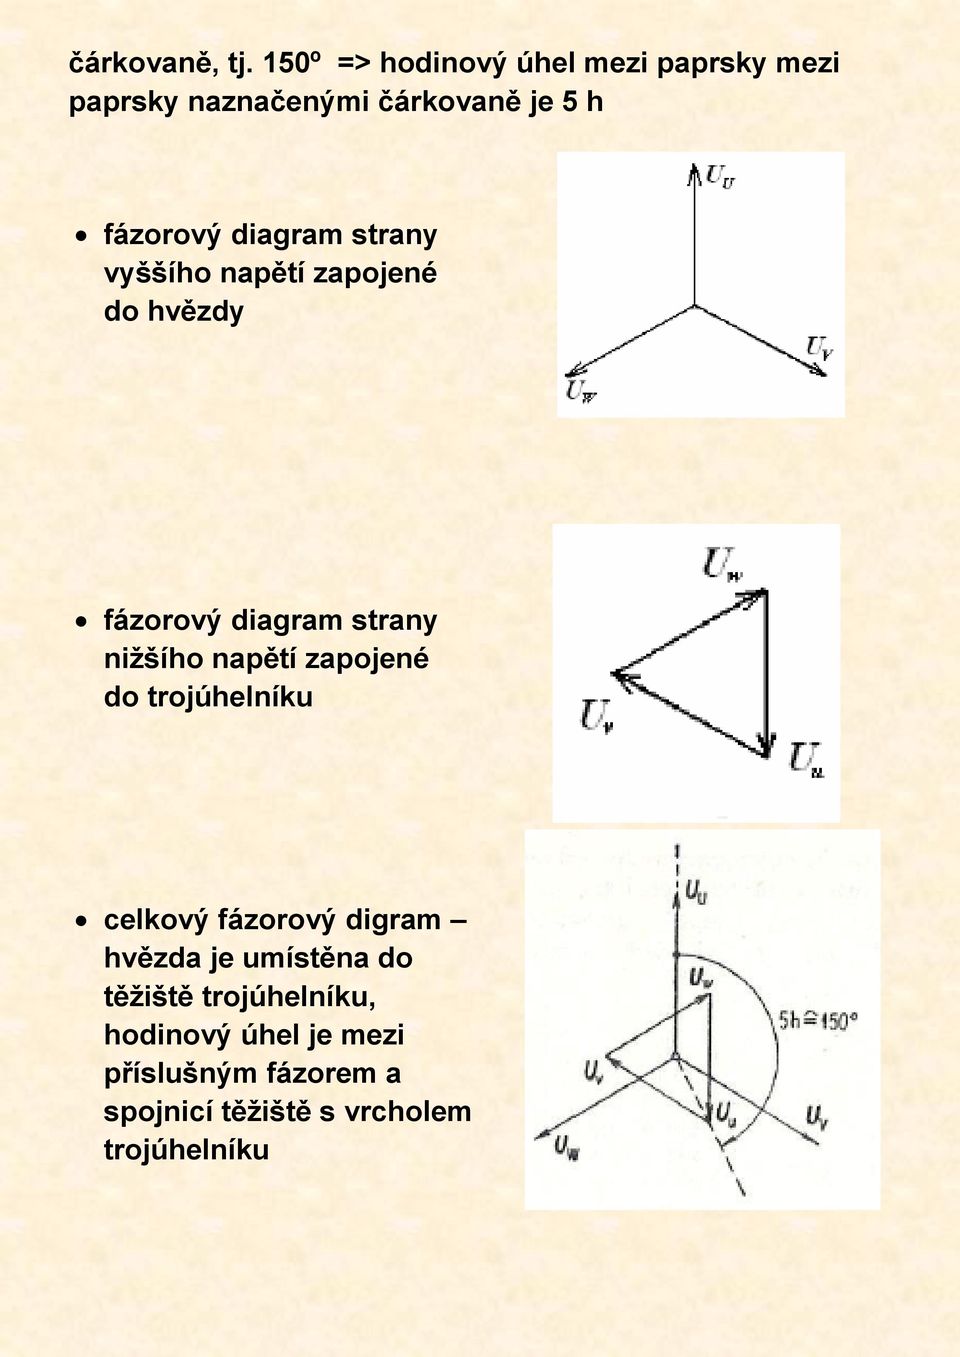 diagram strany vyššího napětí zapojené do hvězdy fázorový diagram strany nižšího napětí